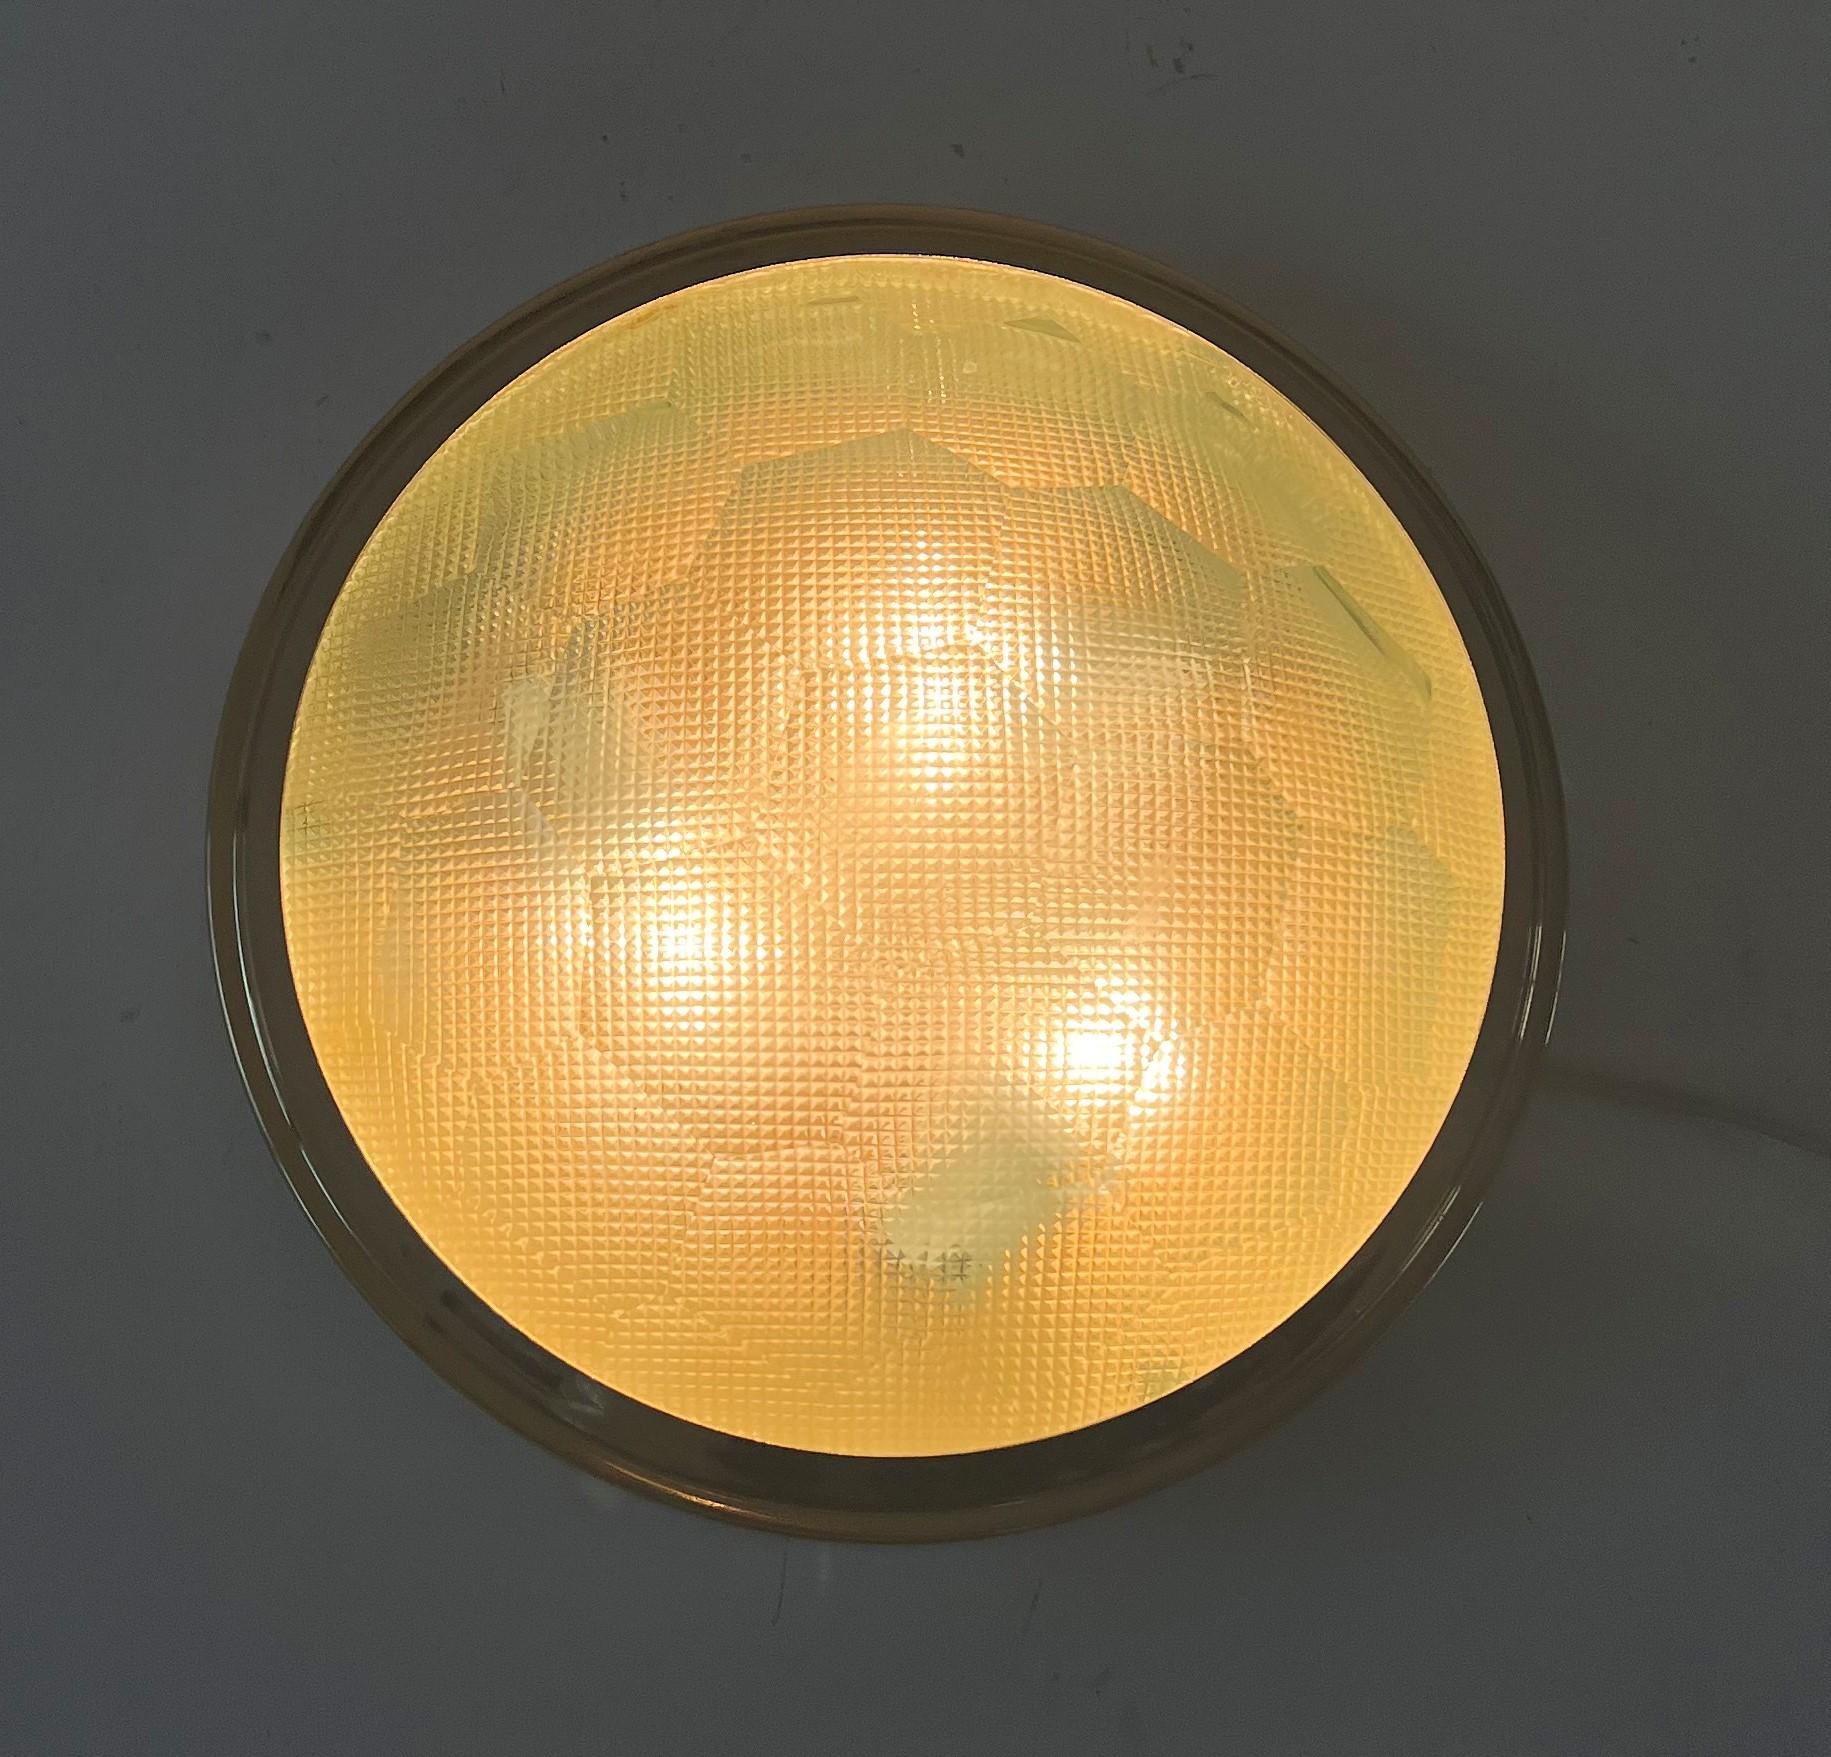 Space Age-Leuchte oder flush mount, hergestellt in Italien um 1960.
Die Leuchte besteht aus einem goldfarbenen Rahmen und 2 Kristallgläsern, von denen das äußere facettiert ist und das innere aus vierkantigem Pressglas besteht.
Beide Techniken sind